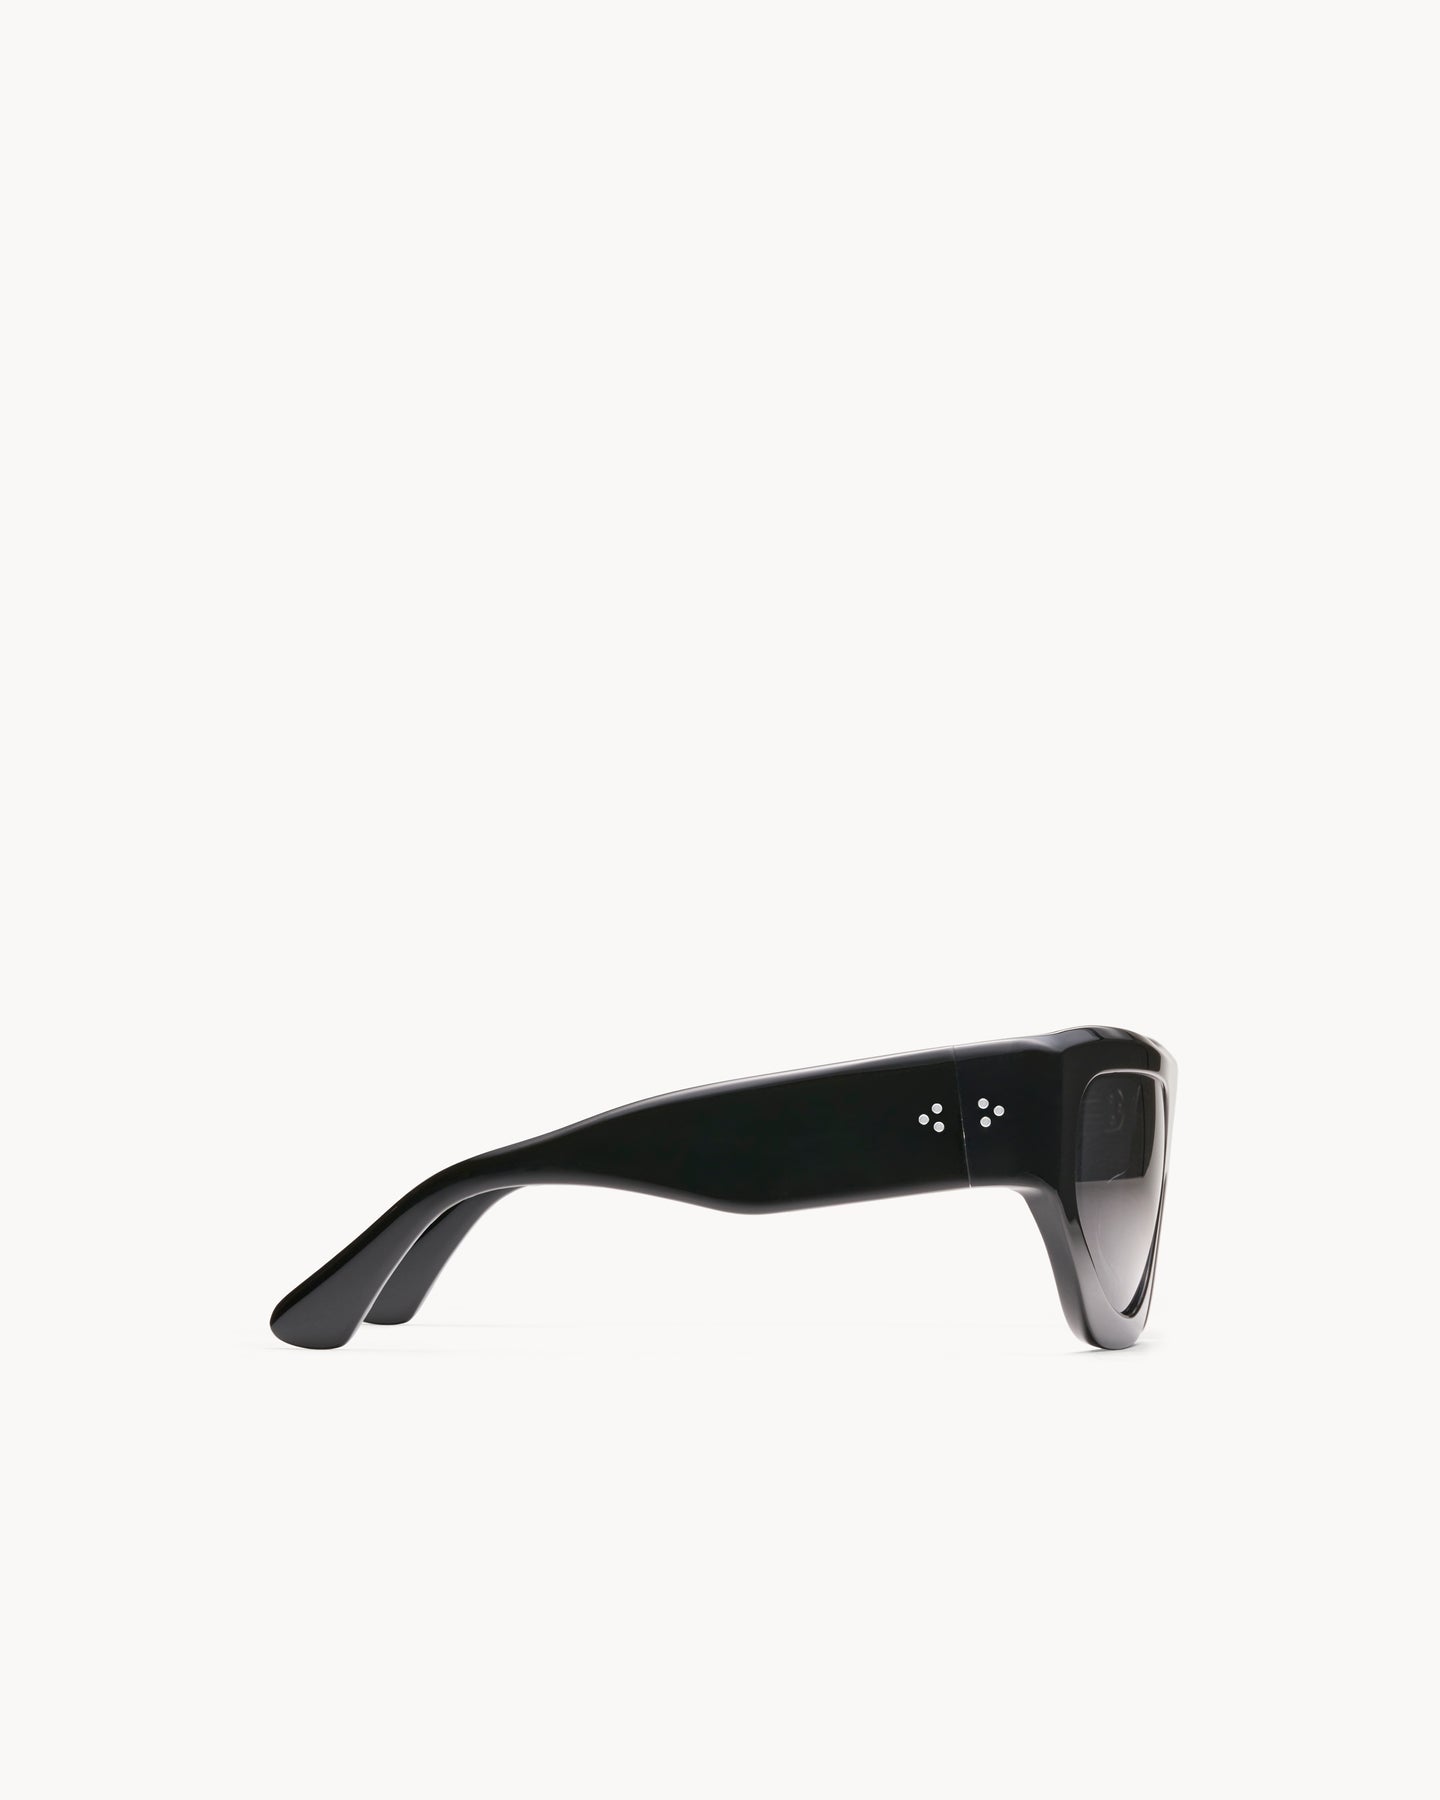 Port Tanger Dost Sunglasses in Black Acetate and Black Lenses 4